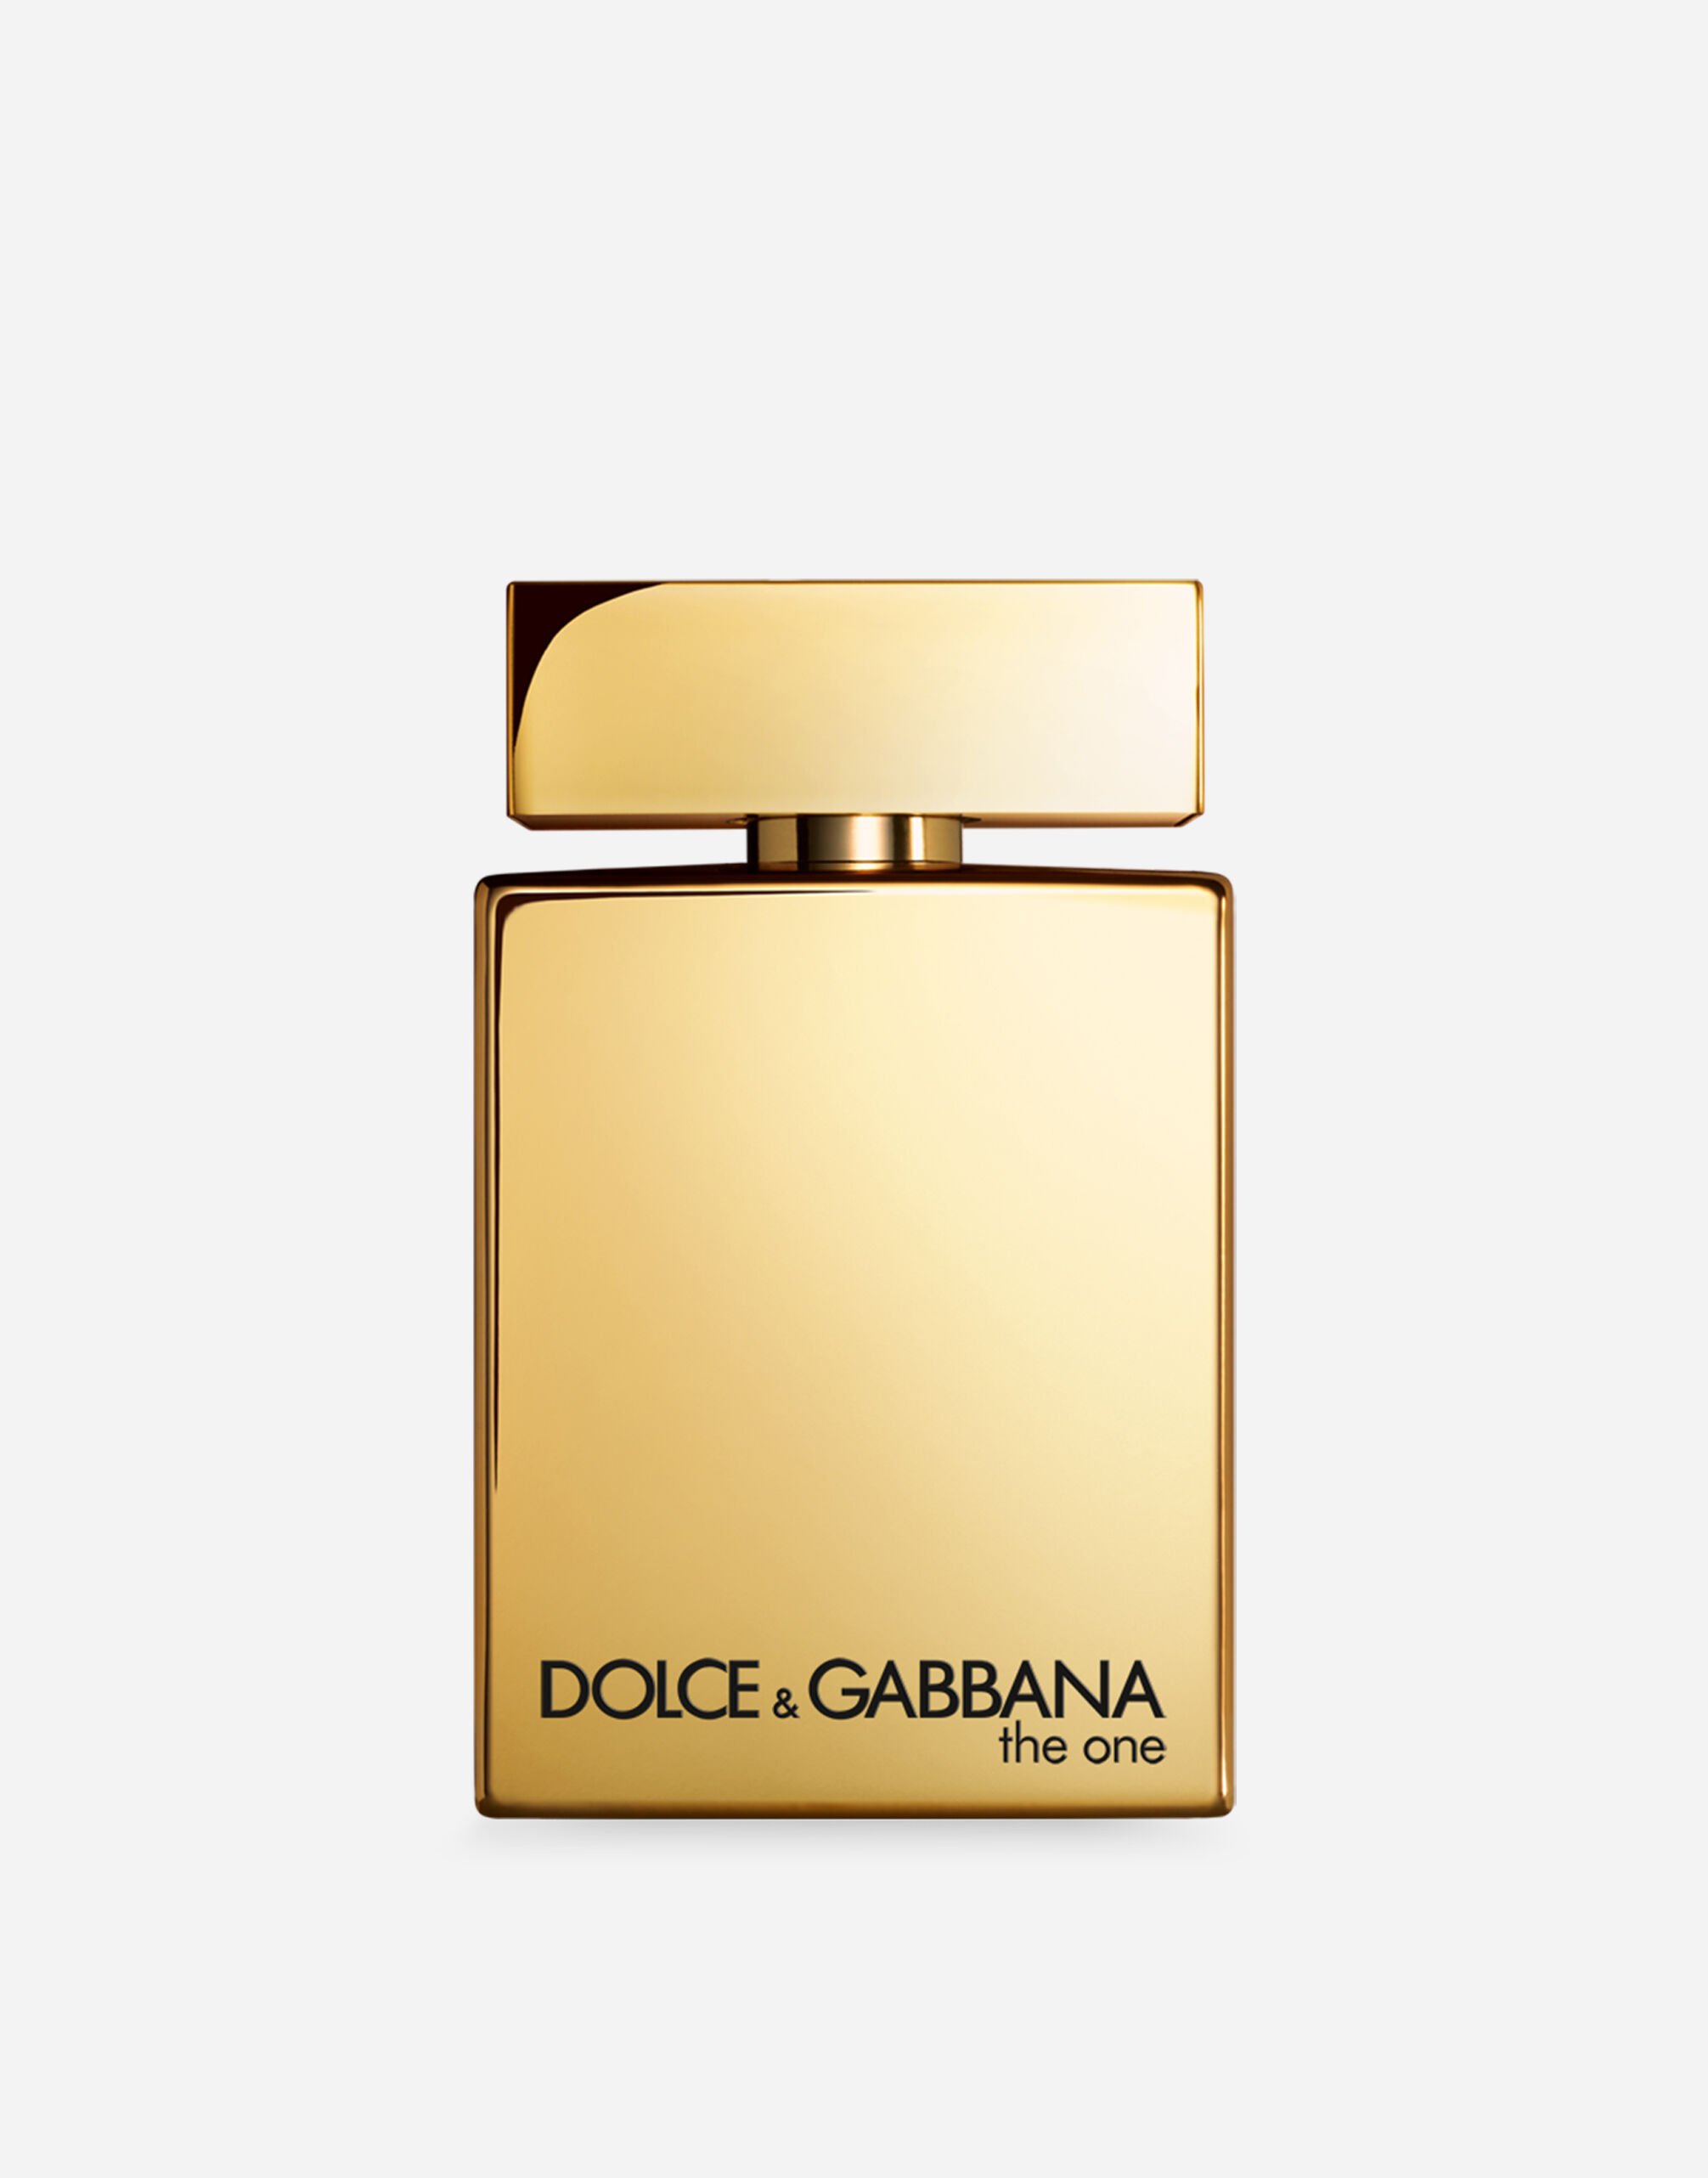 Dolce & Gabbana The One for Men Gold Eau de Parfum Intense - VP001LVP000